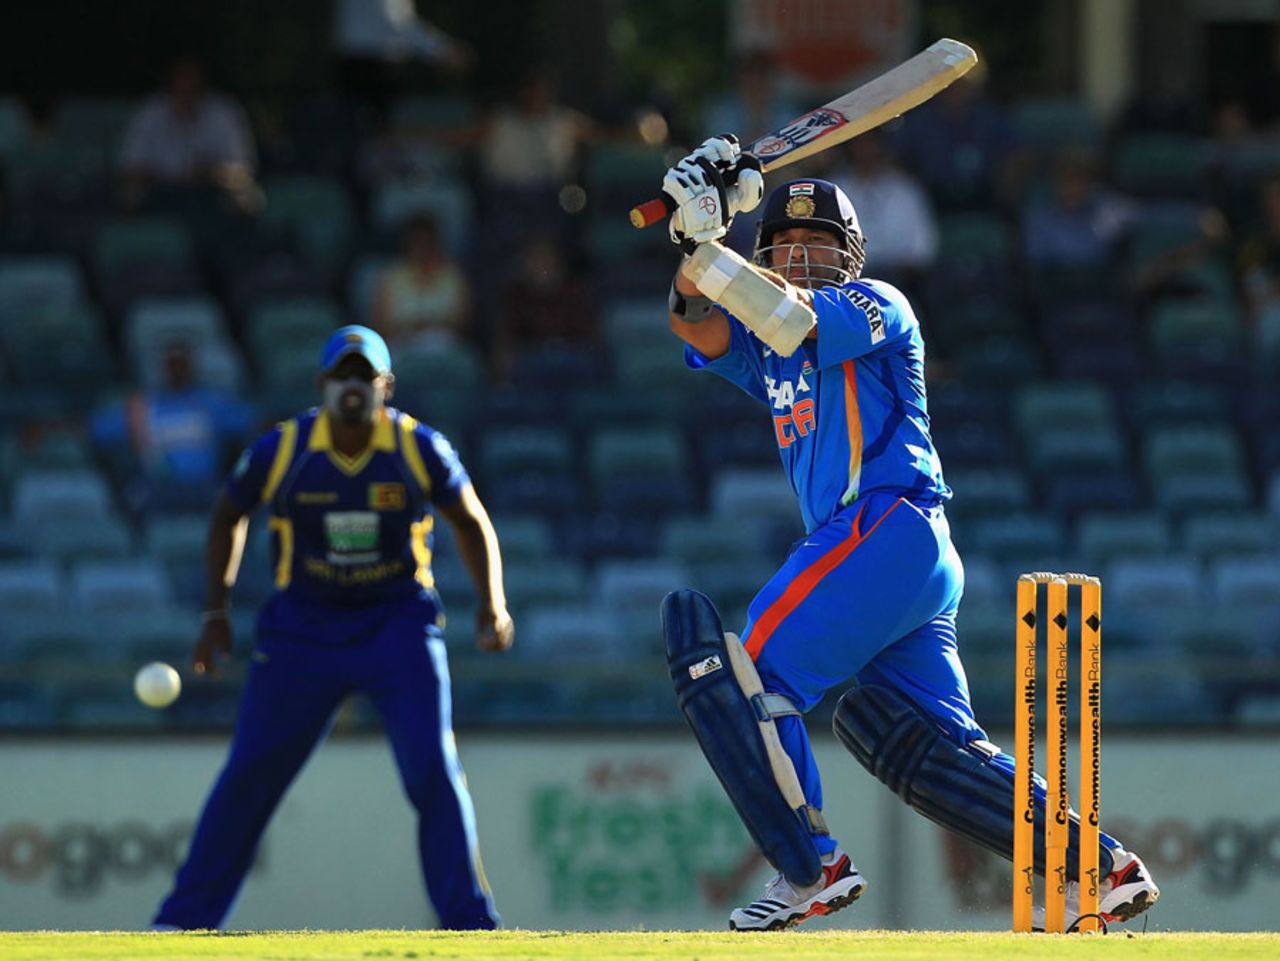 Sachin Tendulkar lofts over the leg side, India v Sri Lanka, CB Series, 2nd ODI, Perth, February 8, 2012